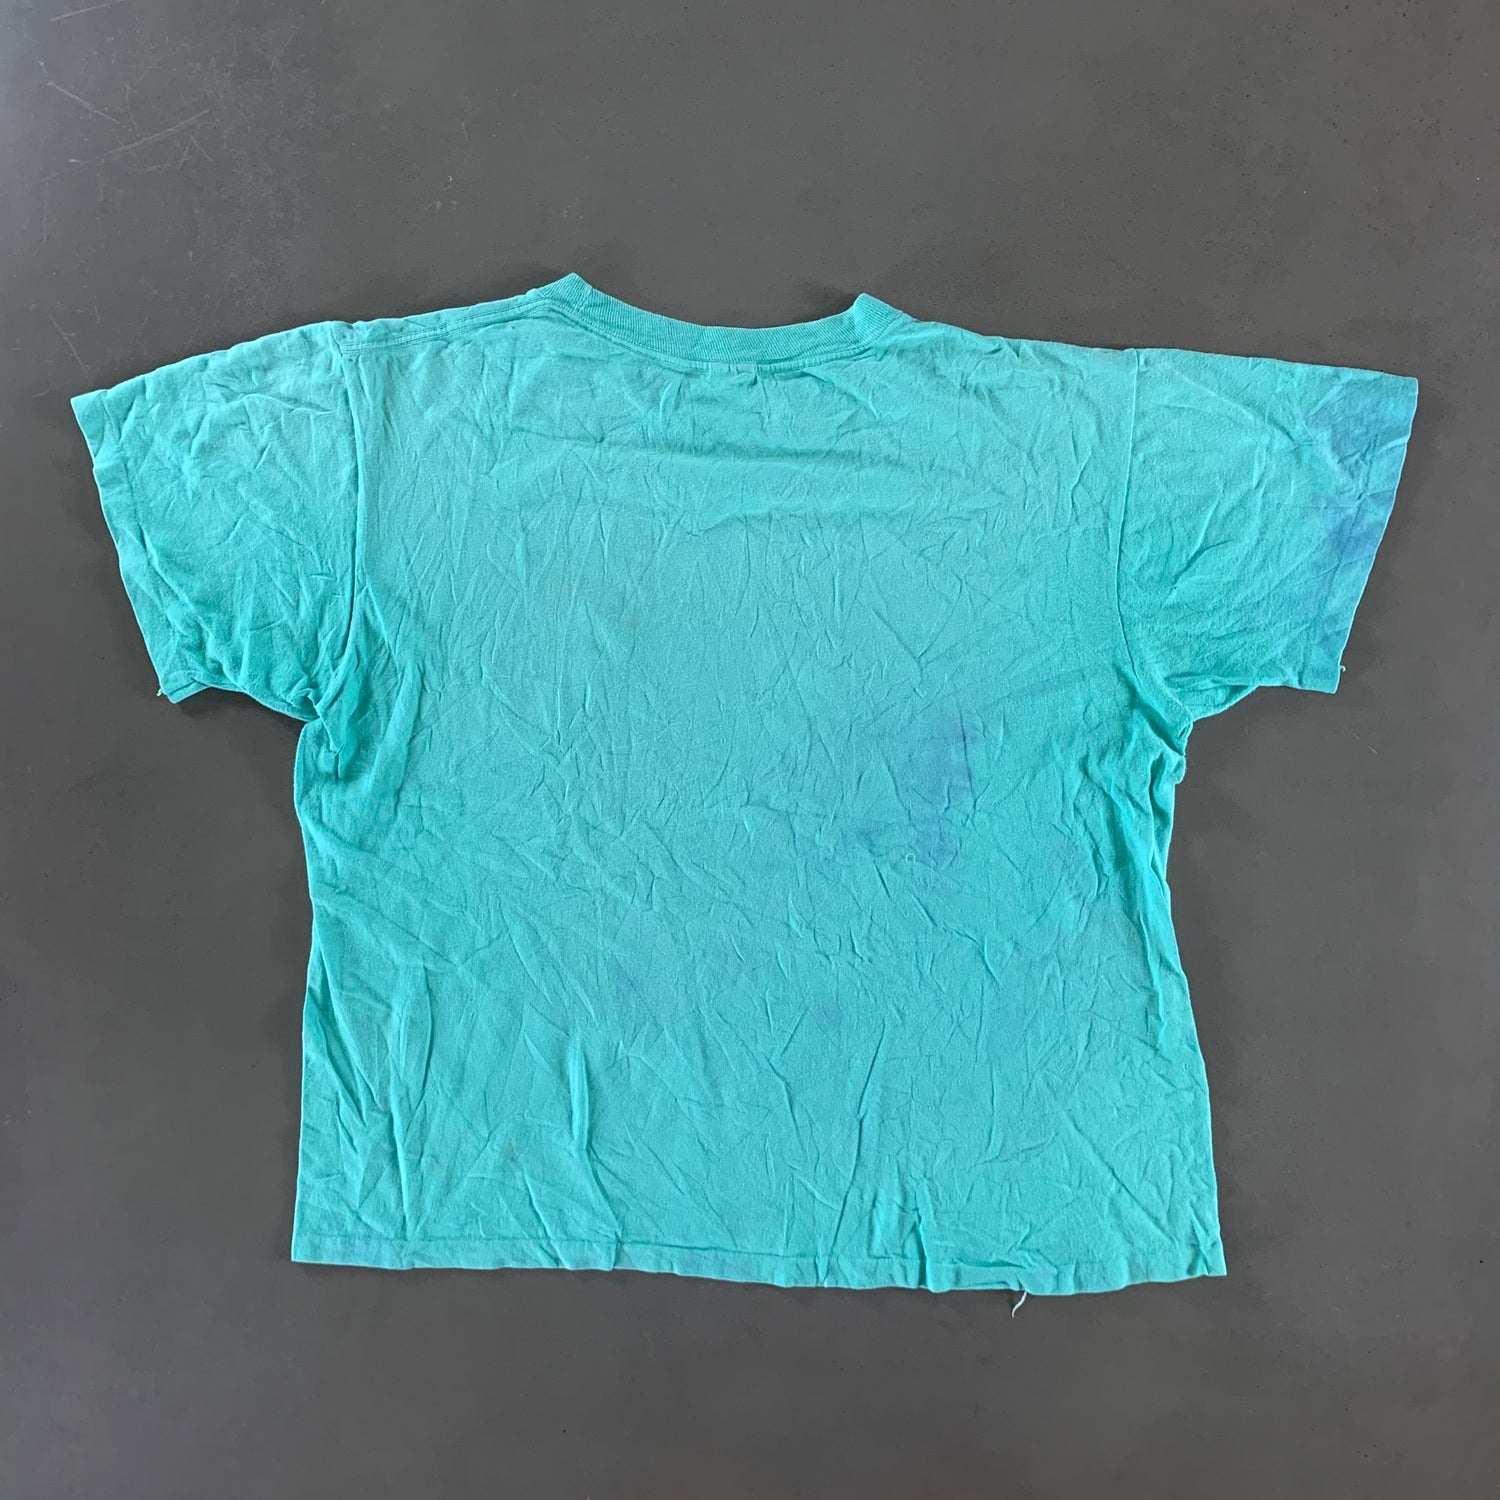 Vintage 1988 Kahlua T-shirt size XL